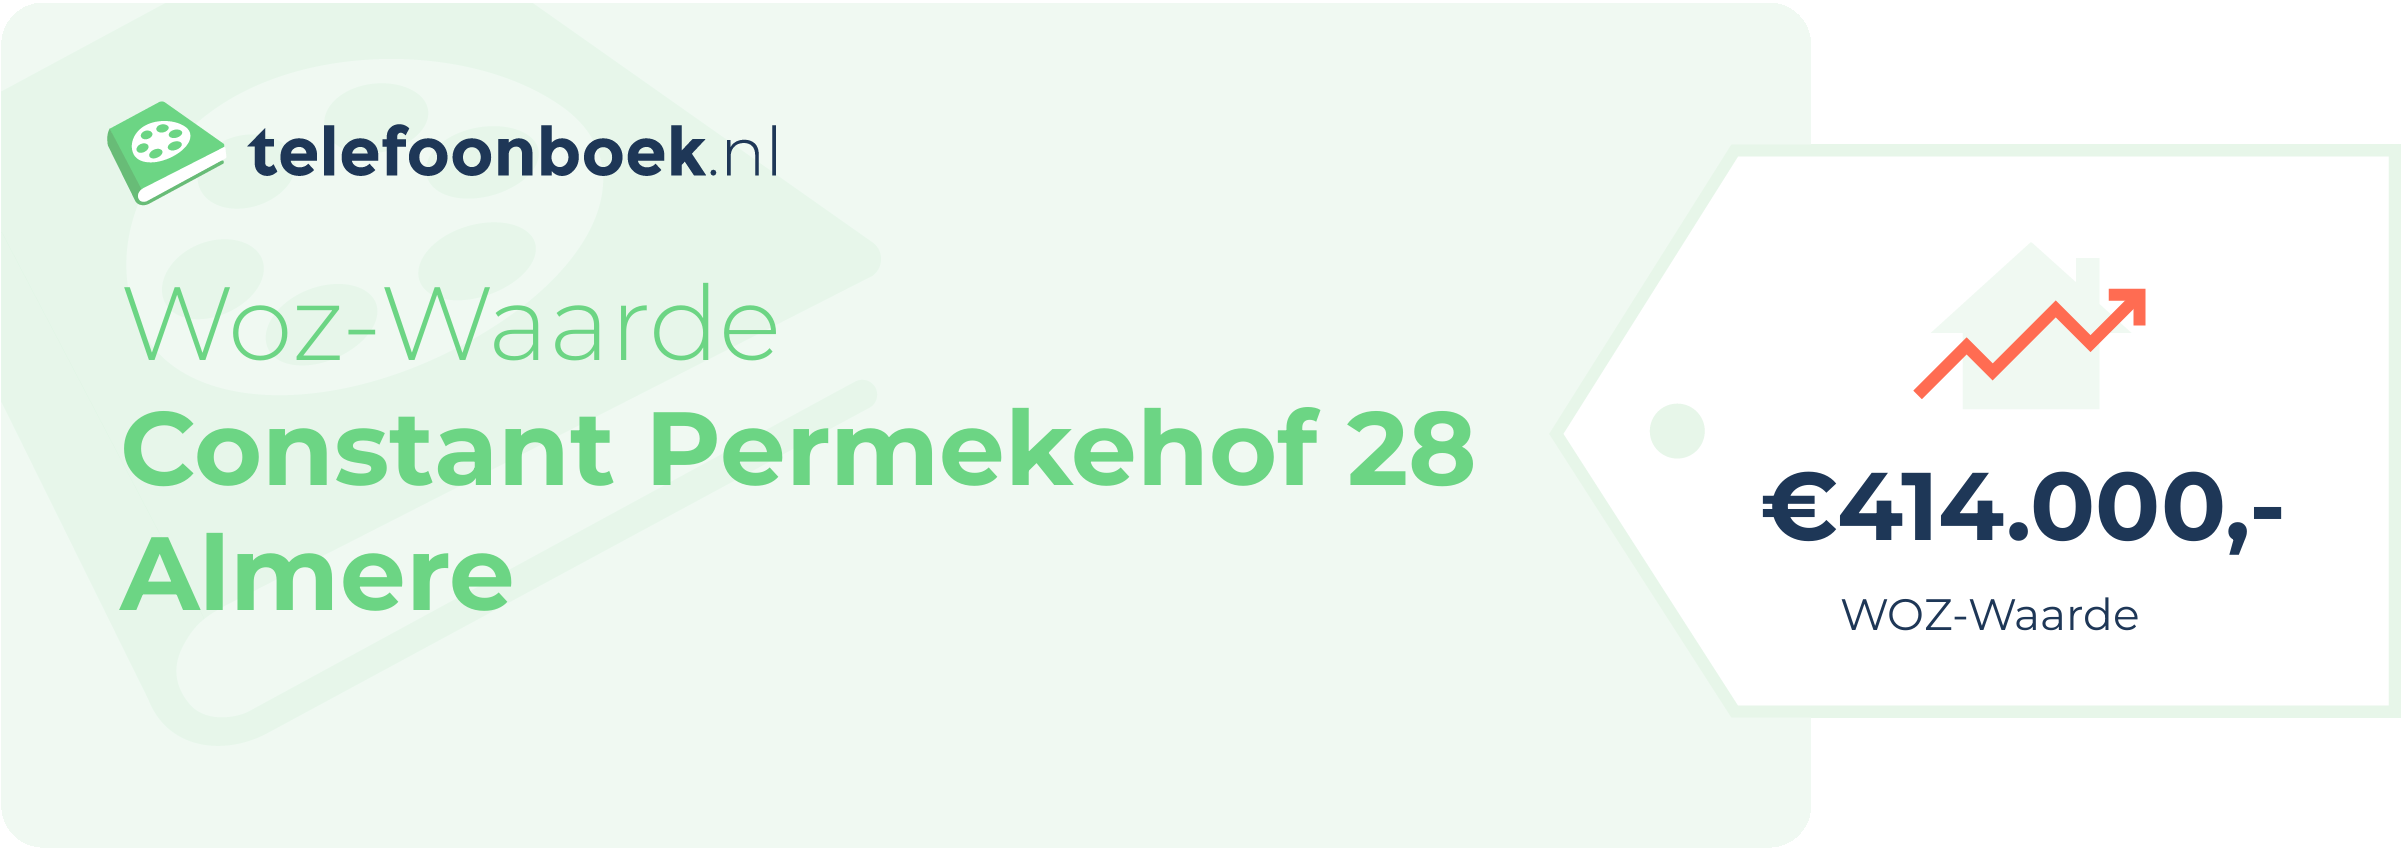 WOZ-waarde Constant Permekehof 28 Almere